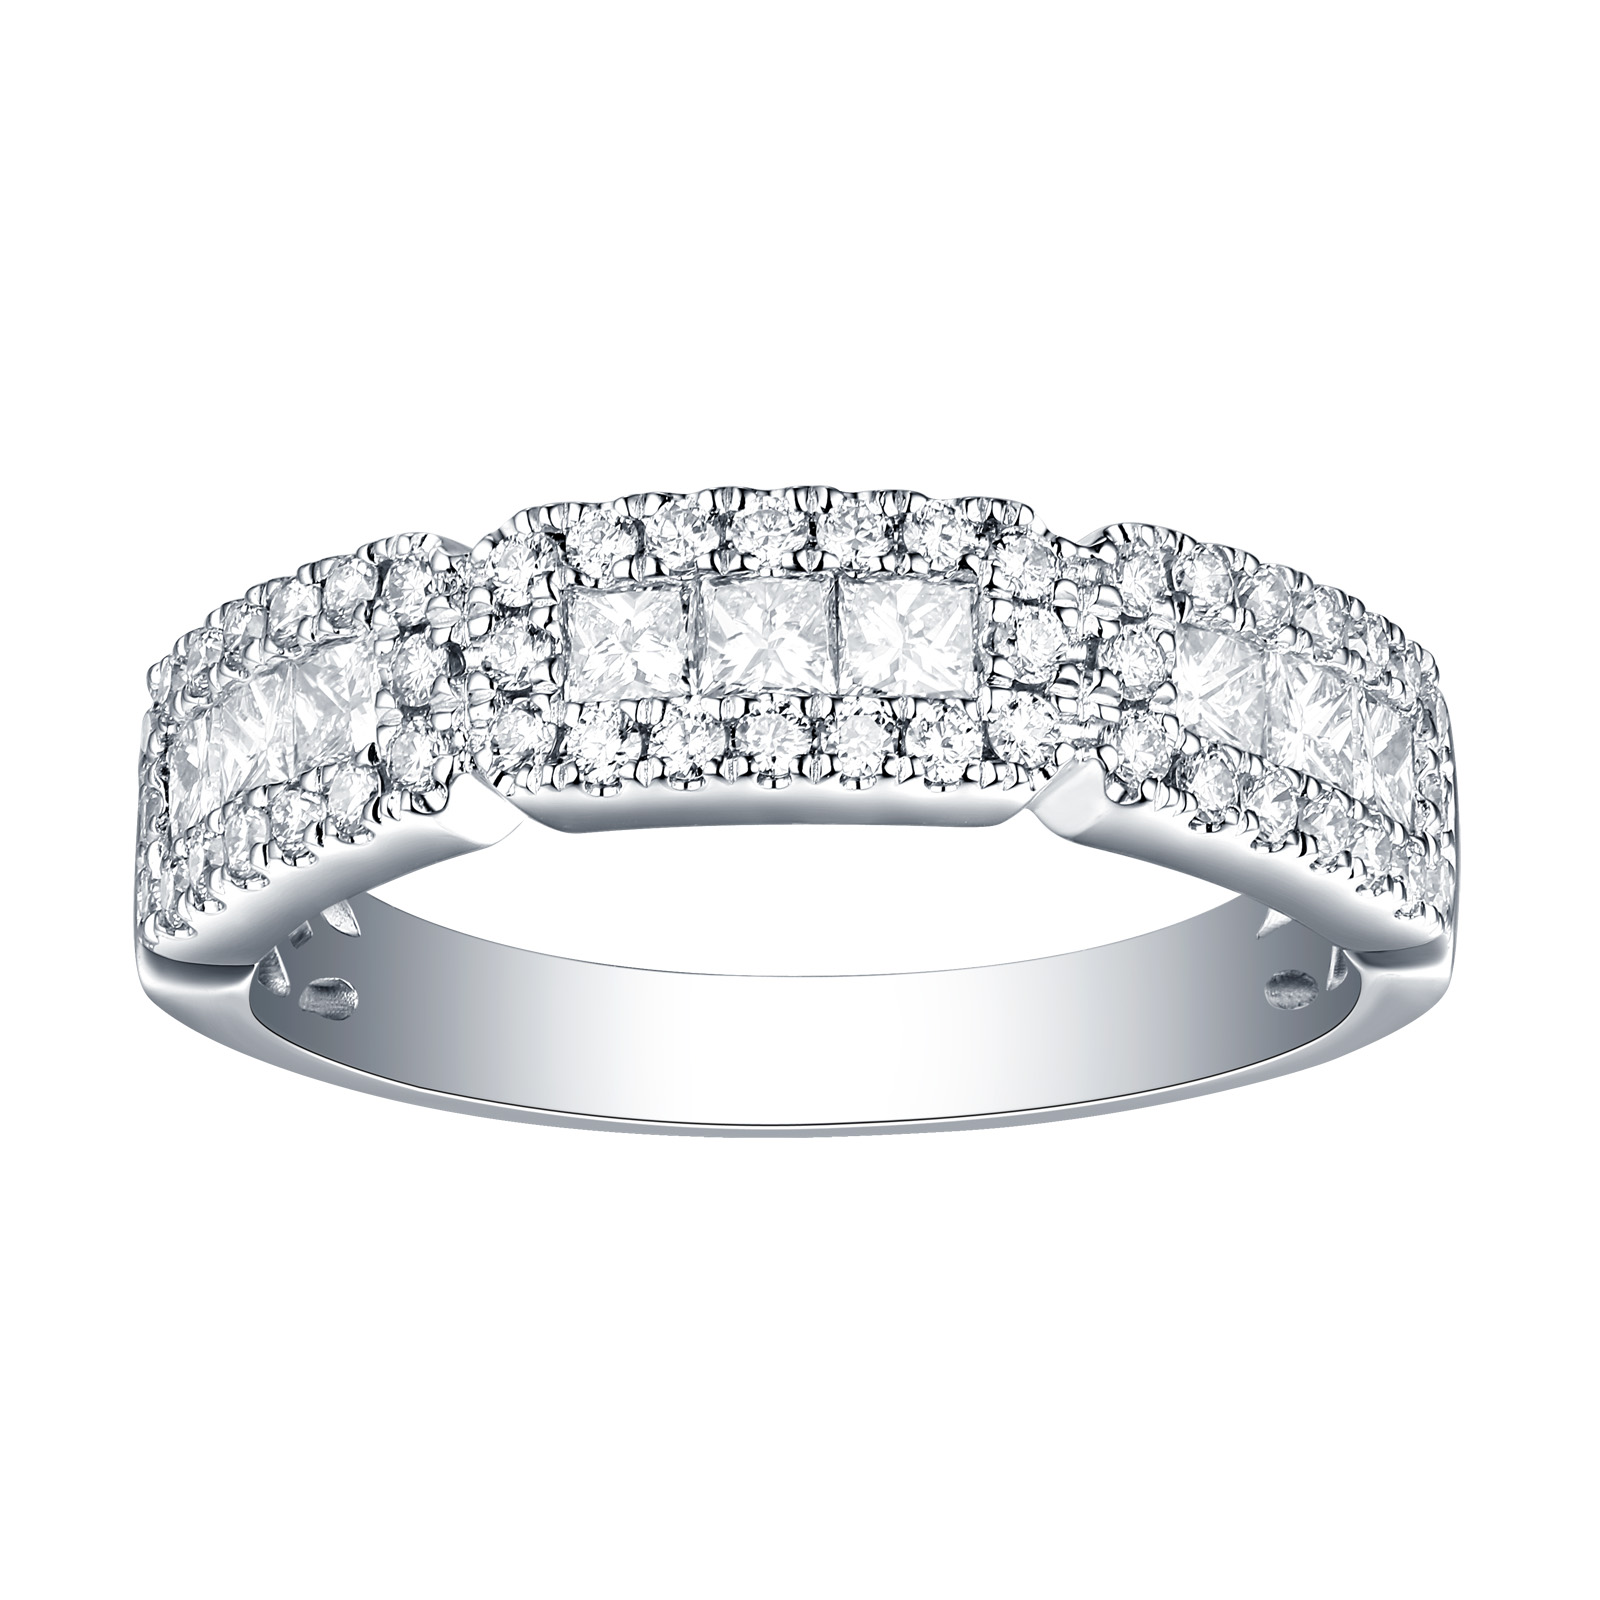 R26075WHT – 14K White Gold Diamond Ring, 0.86 TCW